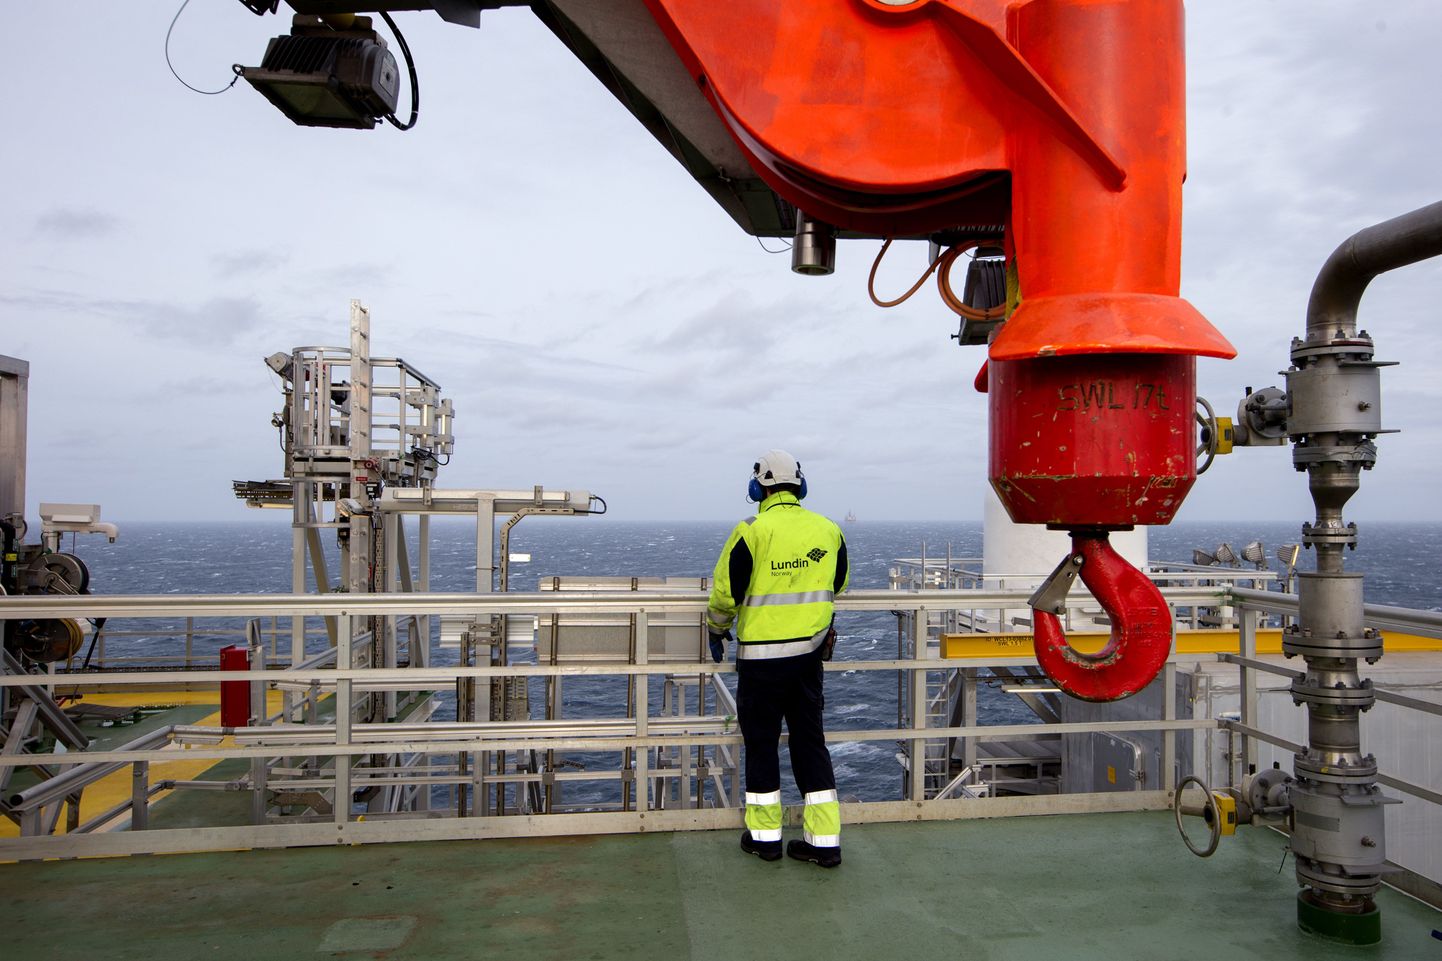 Norra naftatööstus on vähendanud töötajate arvu 30 000 võrra. Pildil Põhjameres asuva naftaplatvormi Edvard Grieg tööline.